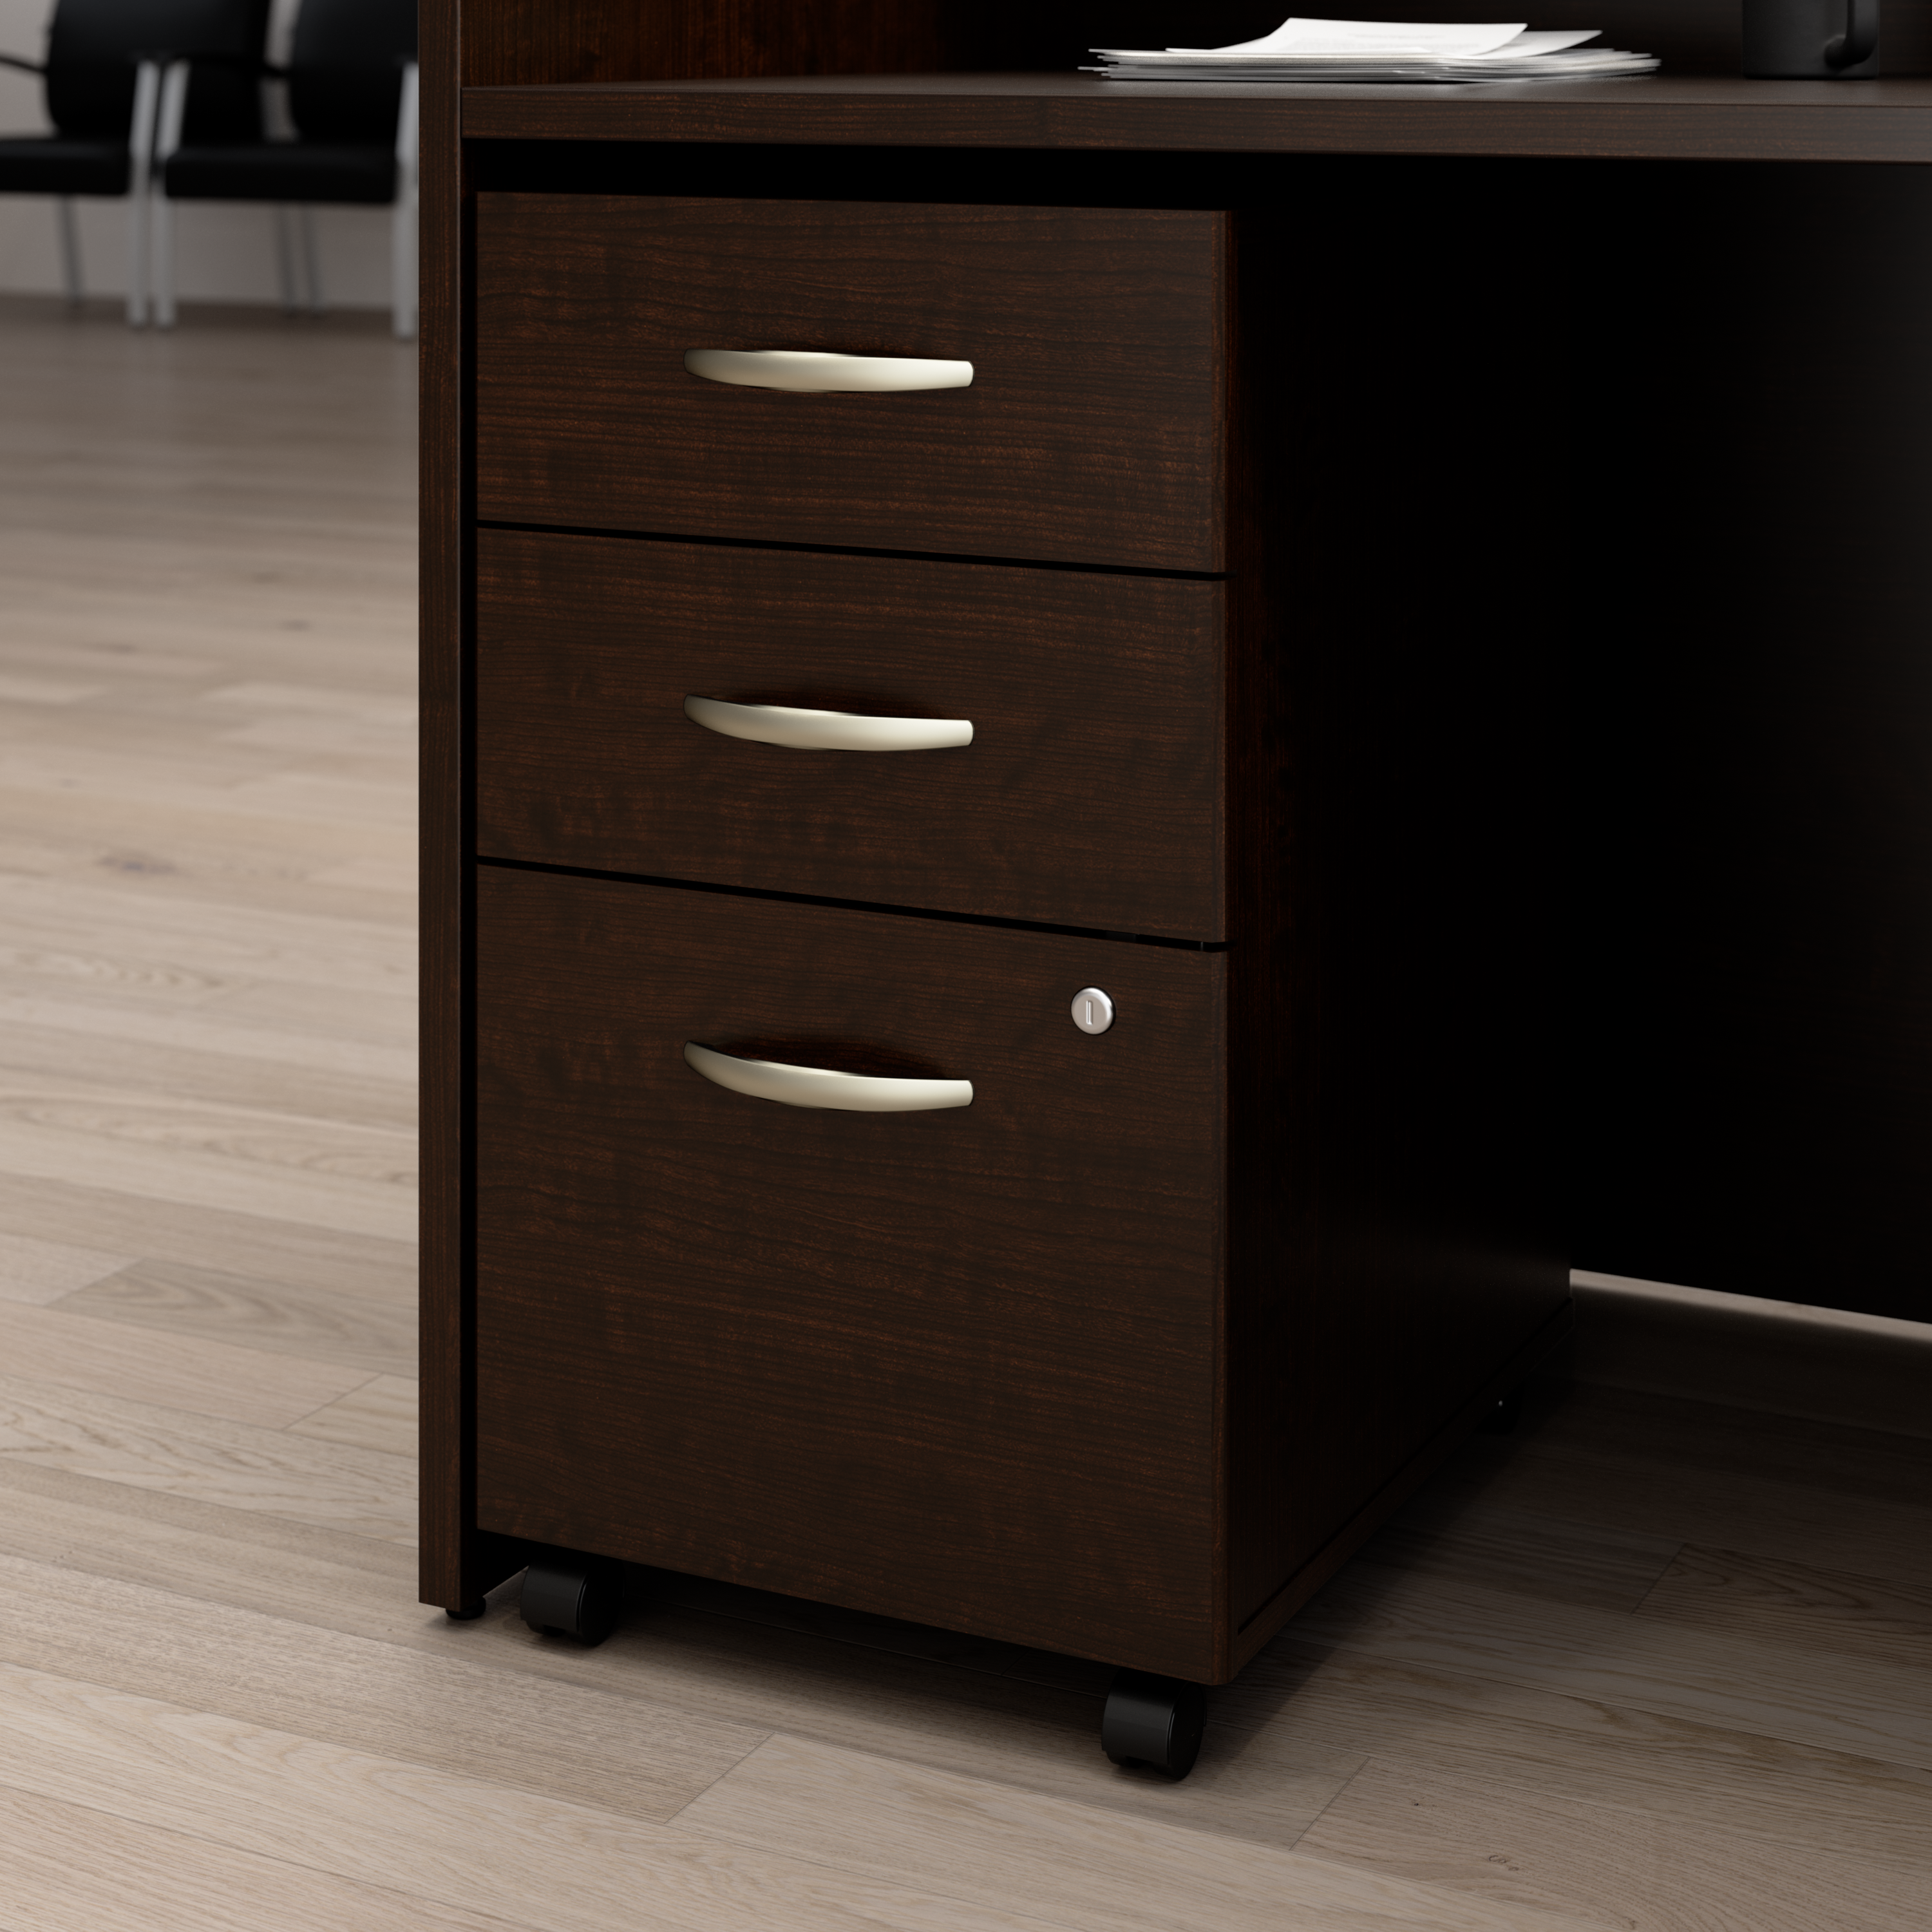 Shop Bush Business Furniture Arrive 3 Drawer Mobile File Cabinet - Assembled 01 ARF116MR-Z #color_mocha cherry